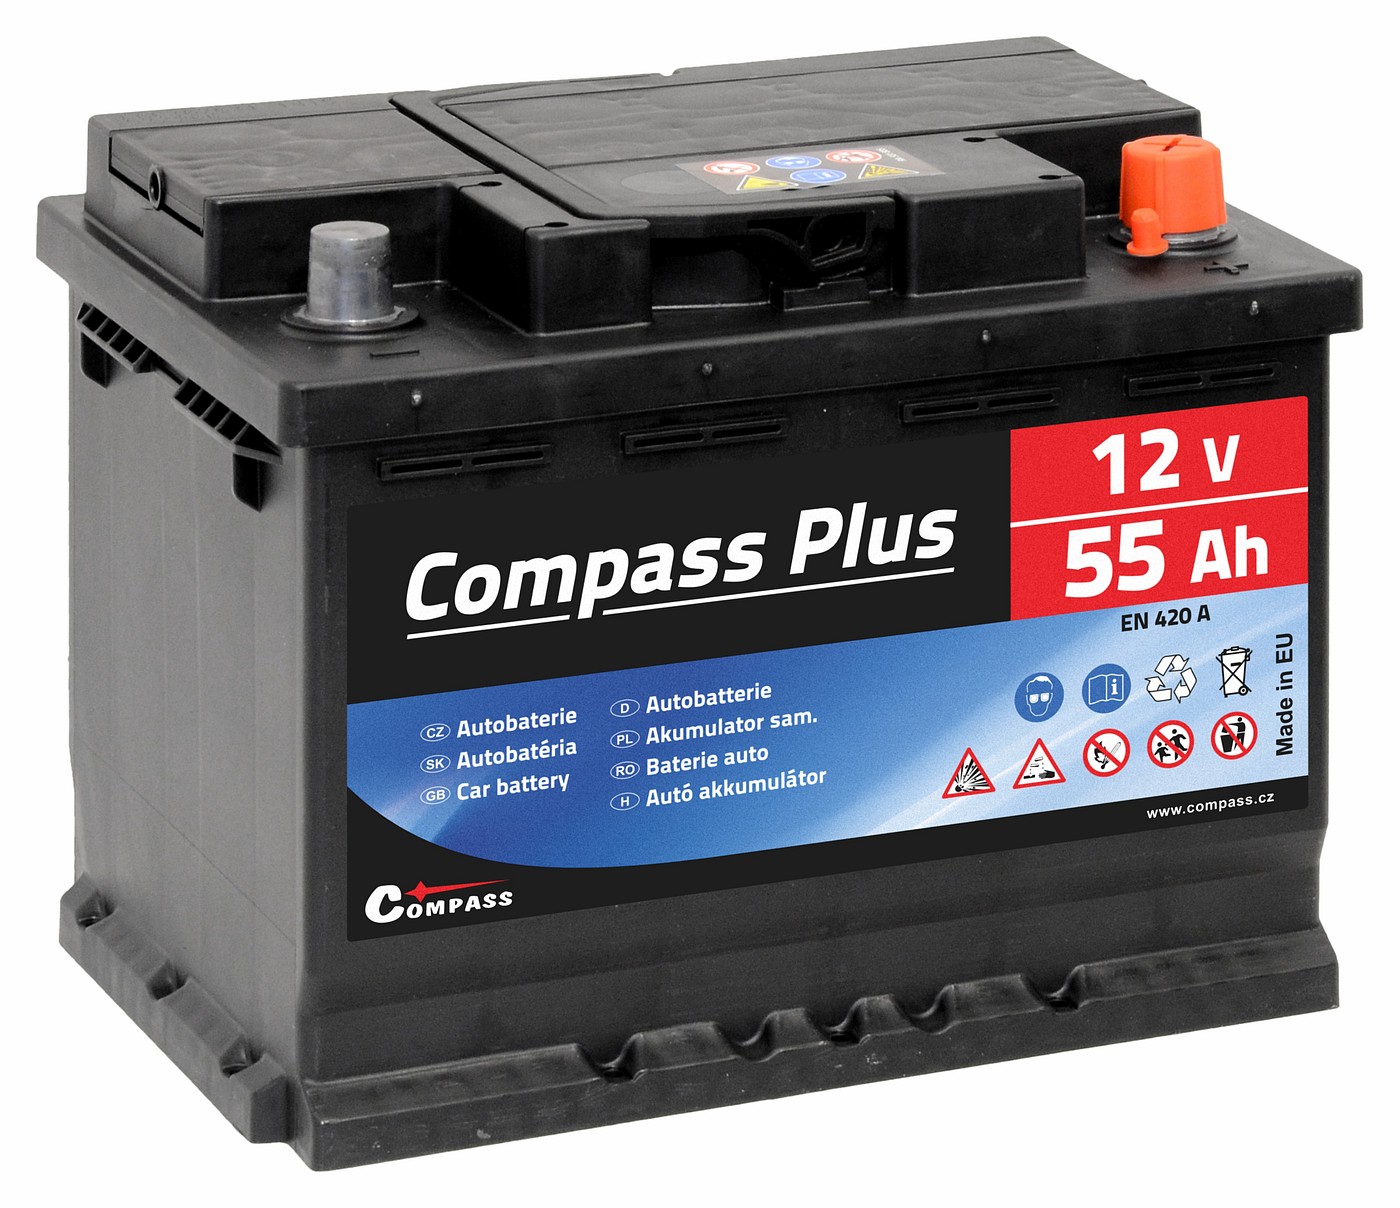 Autobaterie COMPASS PLUS 12V 55Ah 420A Compass AM27562 + Dárek, servis bez starostí v hodnotě 300Kč